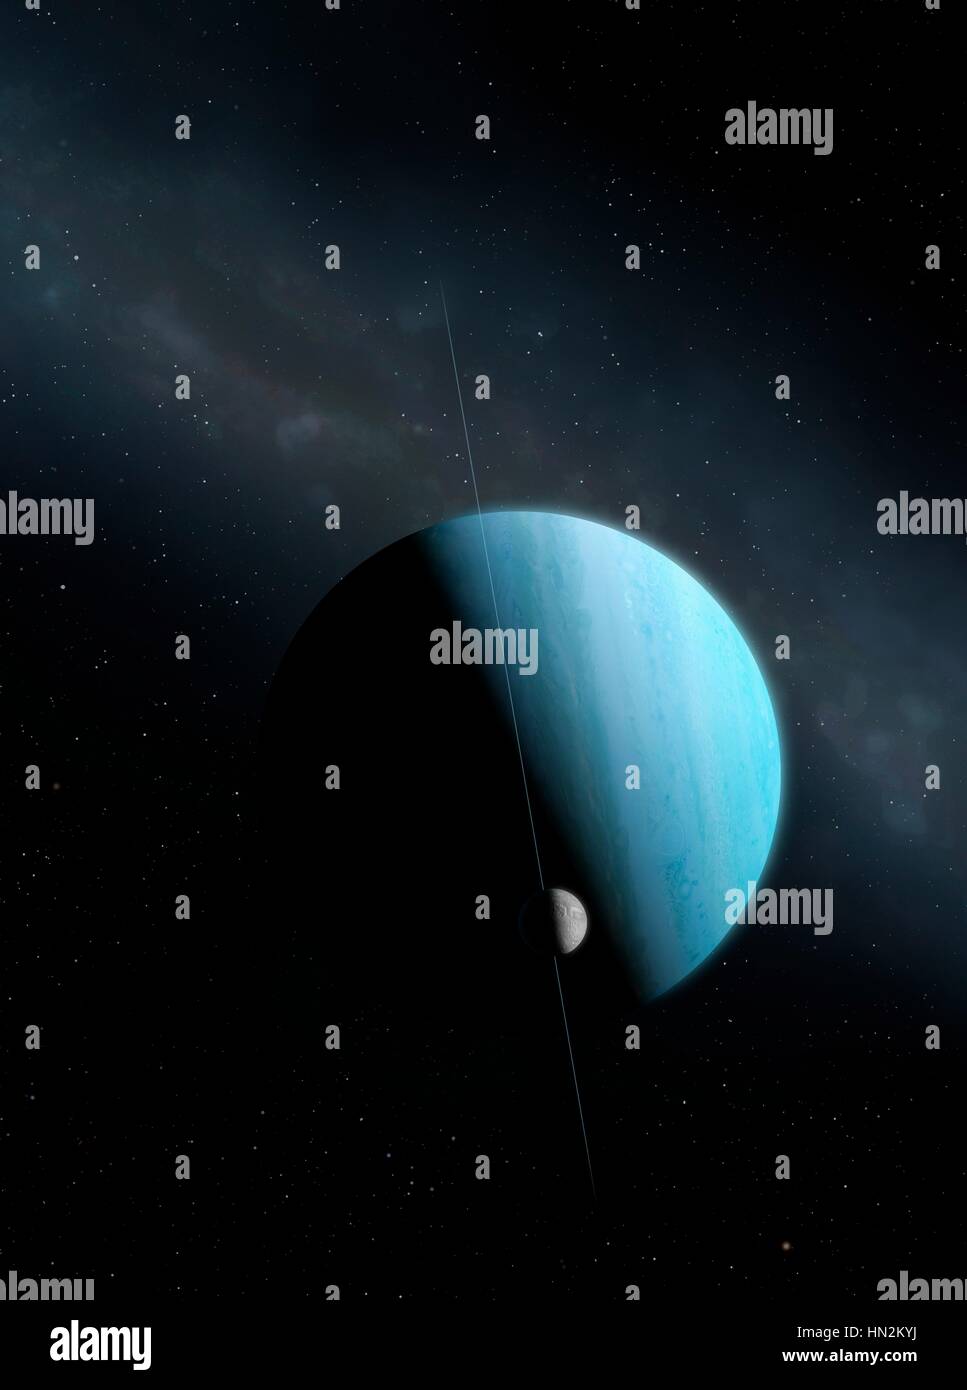 Einen Eindruck von den grünen Eis riesigen Planeten, Uranus und seinem Innersten erhebliche Mond, den gebrochenen Miranda. Uranus ist der siebte Planet in der Reihenfolge ihrer Entfernung von der Sonne umkreist in einer mittleren Entfernung von 2,85 Milliarden km. Es ist ungewöhnlich, dass es eine sehr blasse, fast strukturlose Atmosphäre und eine axiale Neigung in der Nähe von 100 Grad hat. Mirandas ungerade Oberfläche einschließlich der höchsten Klippe im bekannten Sonnensystem legt nahe, dass die Welt bei einer Kollision auseinander gebrochen war und später wieder zusammengesetzt. Stockfoto